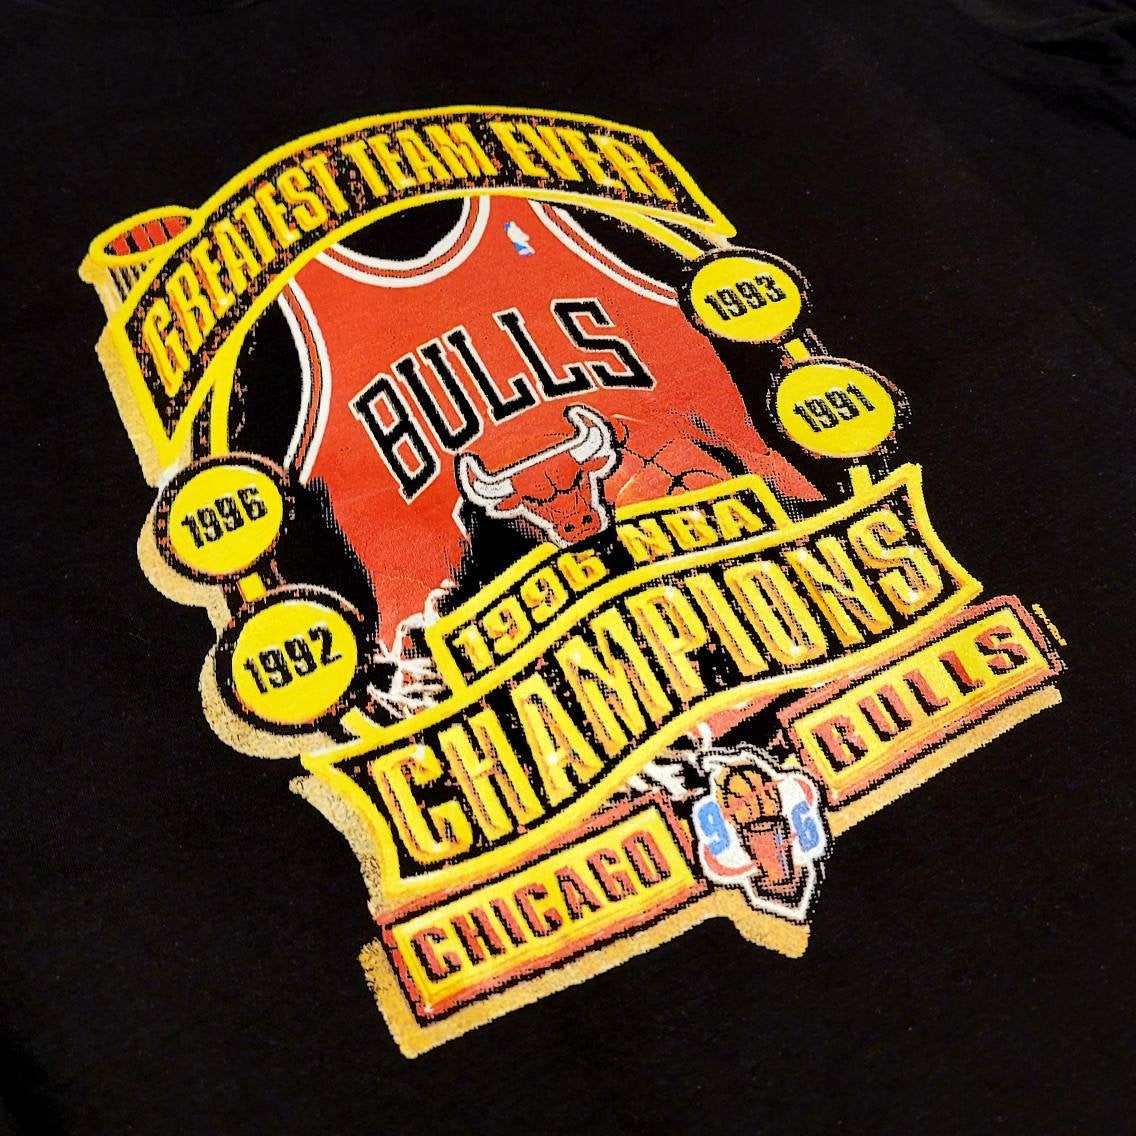 96 bulls championship shirt